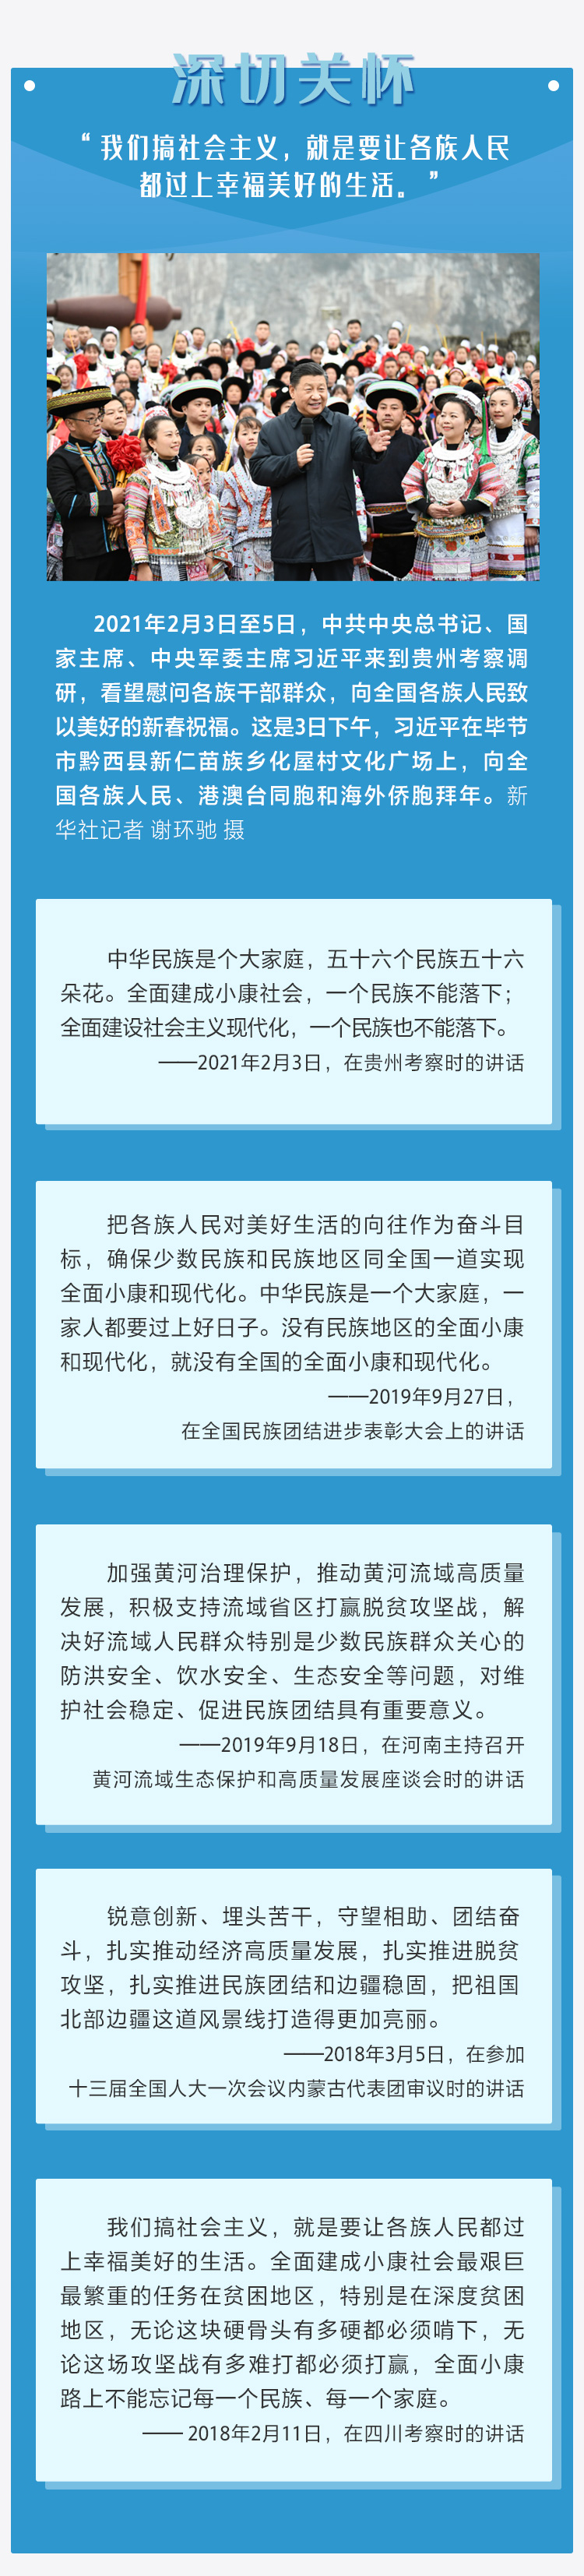 2如何推进民族团结进步事业，习近平这样说 人民网-中国共产党新闻网.jpg